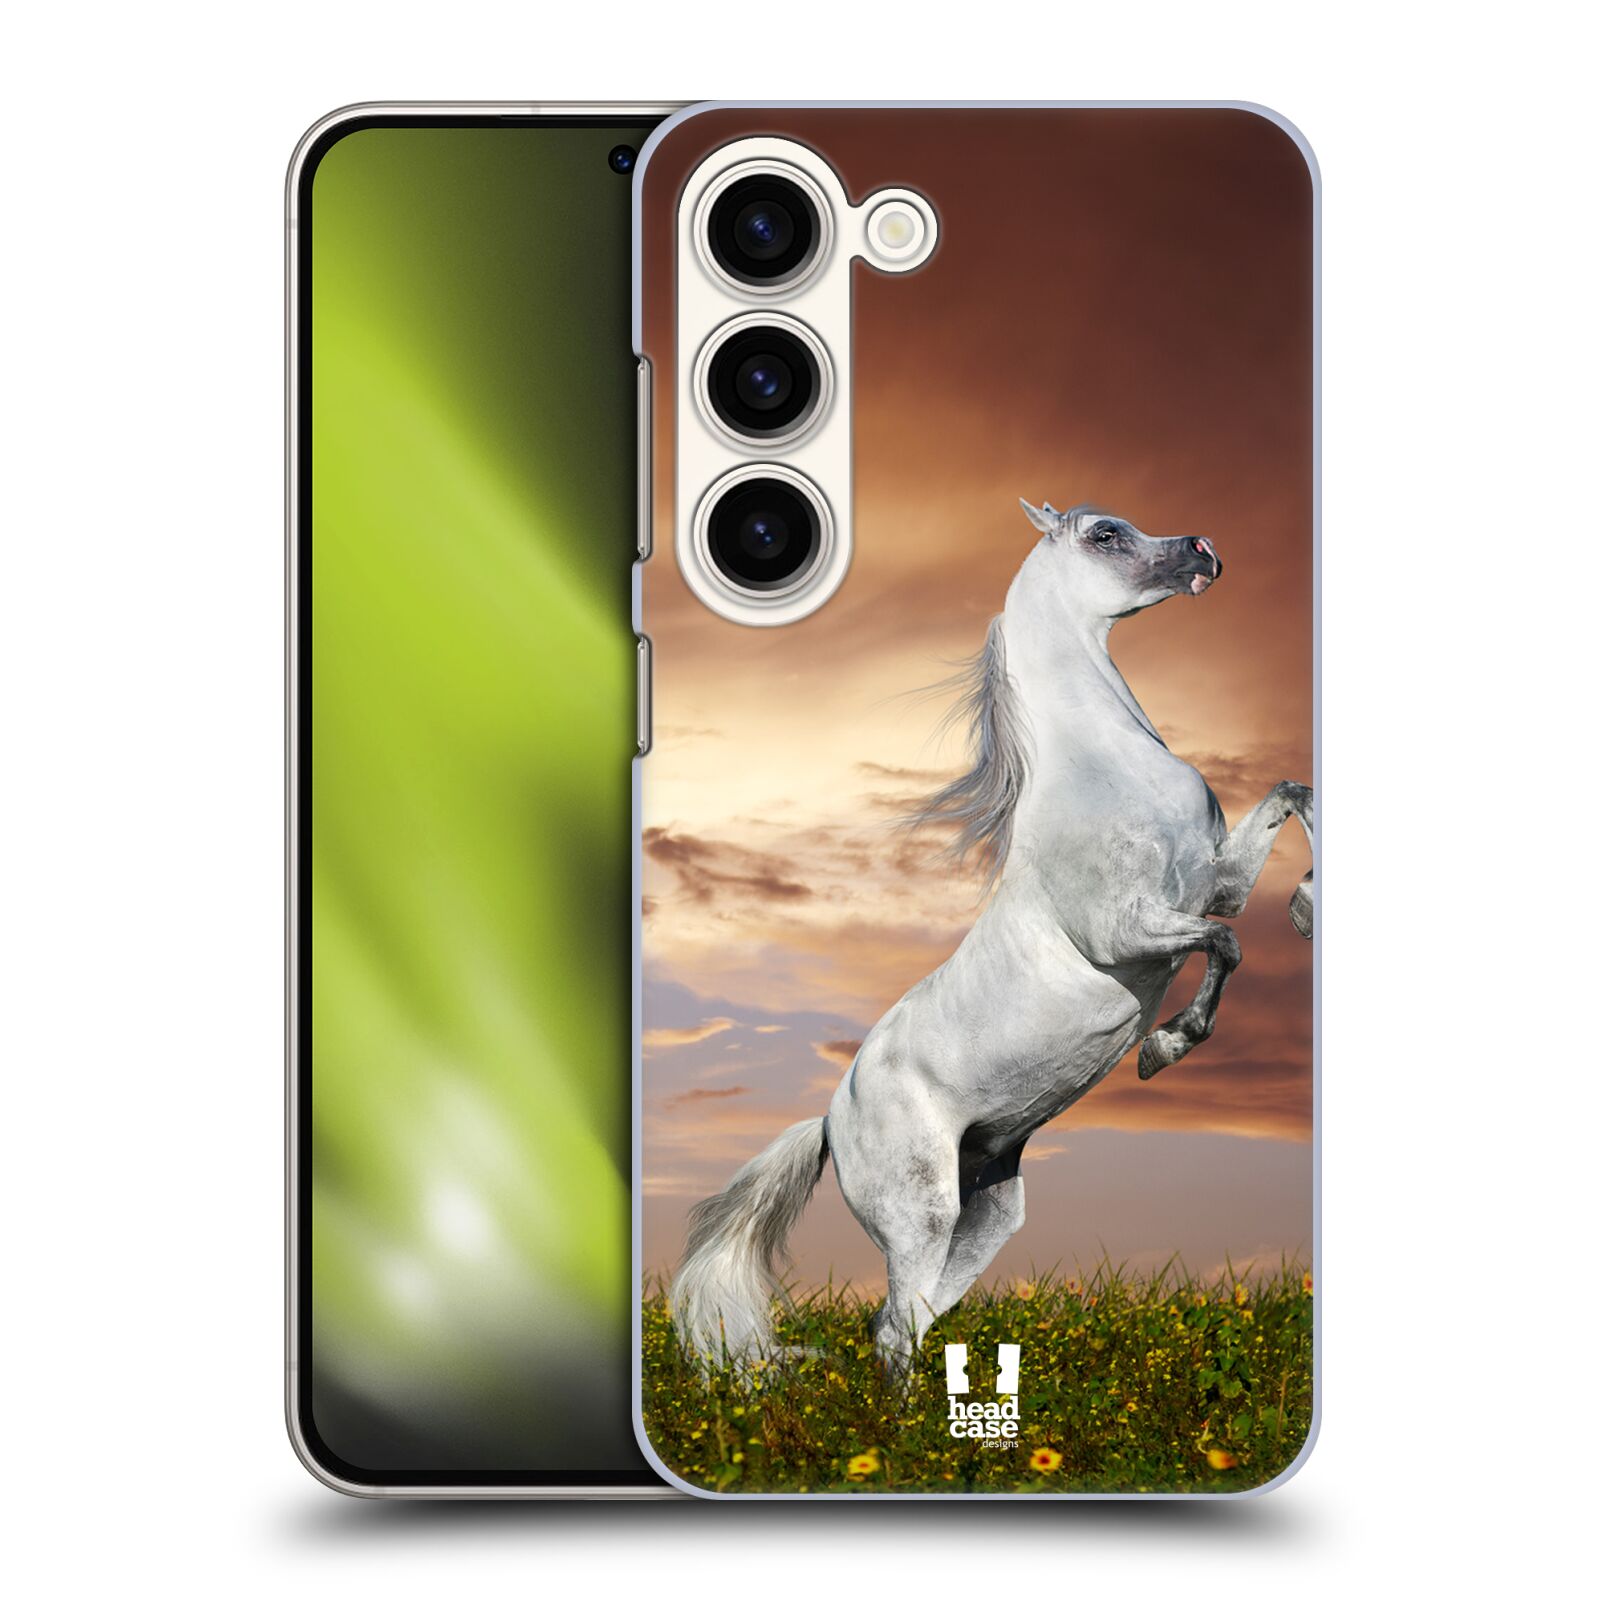 Plastový obal HEAD CASE na mobil Samsung Galaxy S23 vzor Divočina, Divoký život a zvířata foto DIVOKÝ KŮŇ MUSTANG BÍLÁ